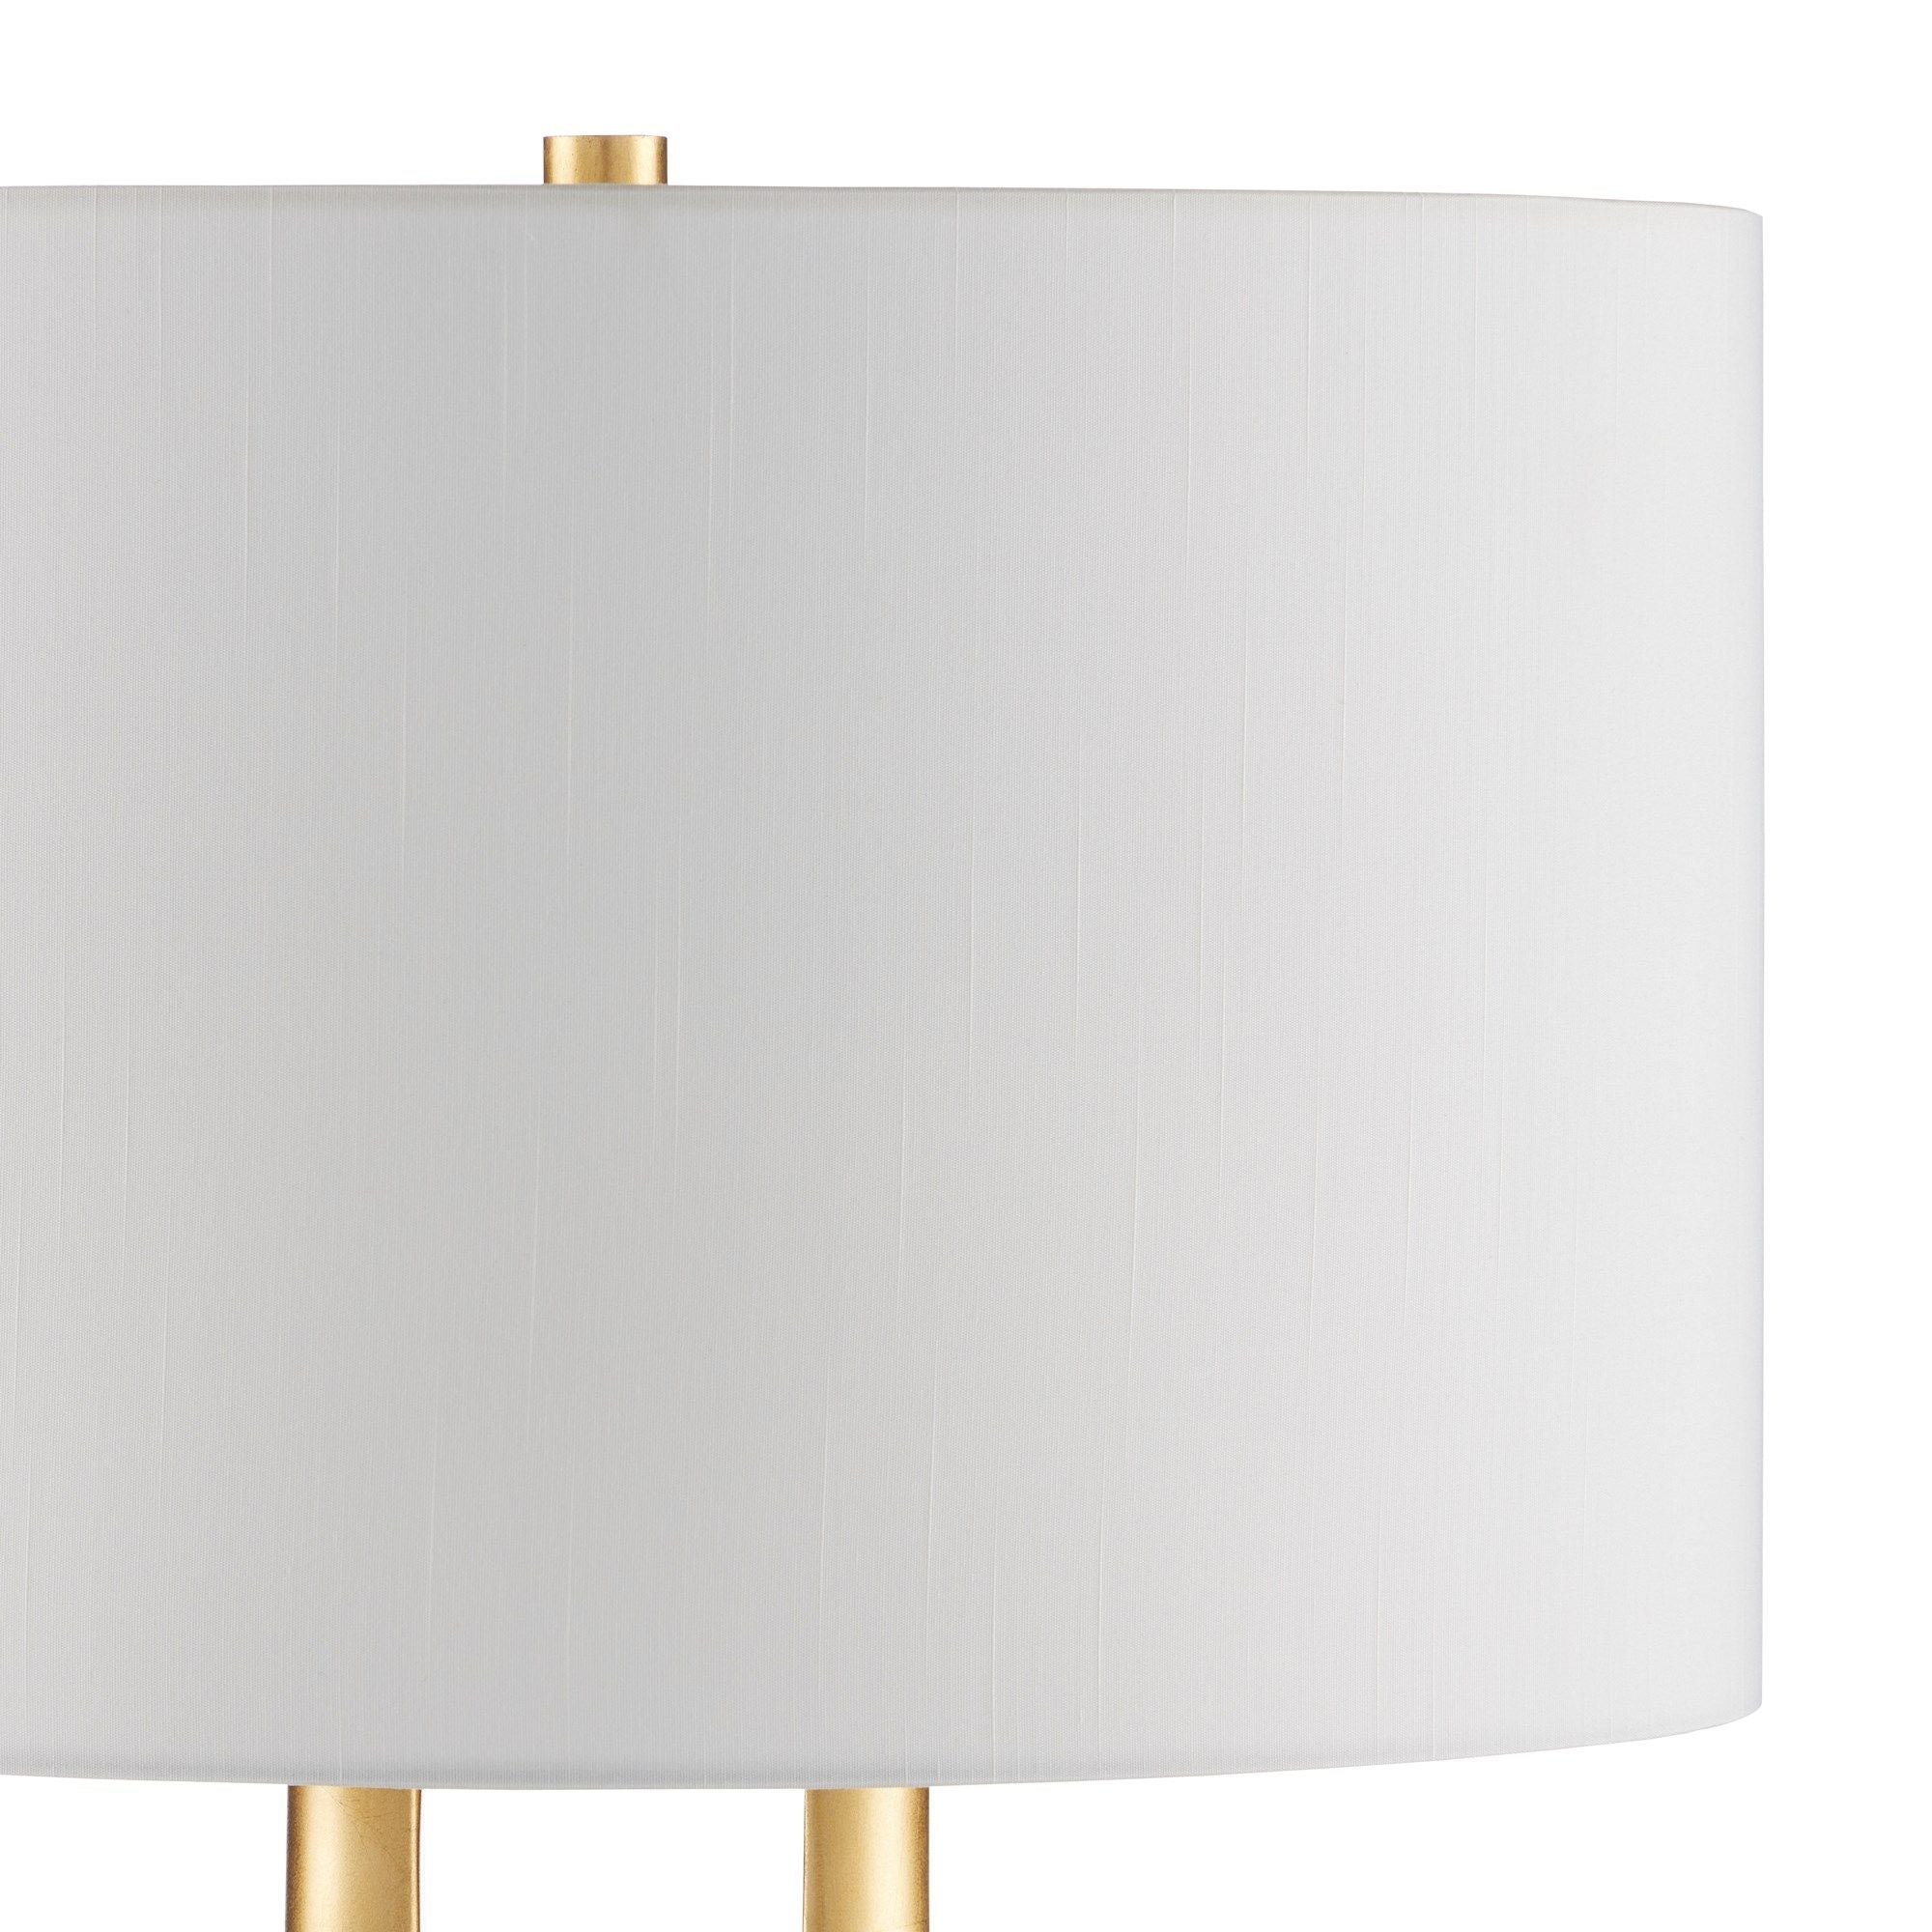 La Porta Gold Table Lamp - Contemporary Gold Leaf/Black